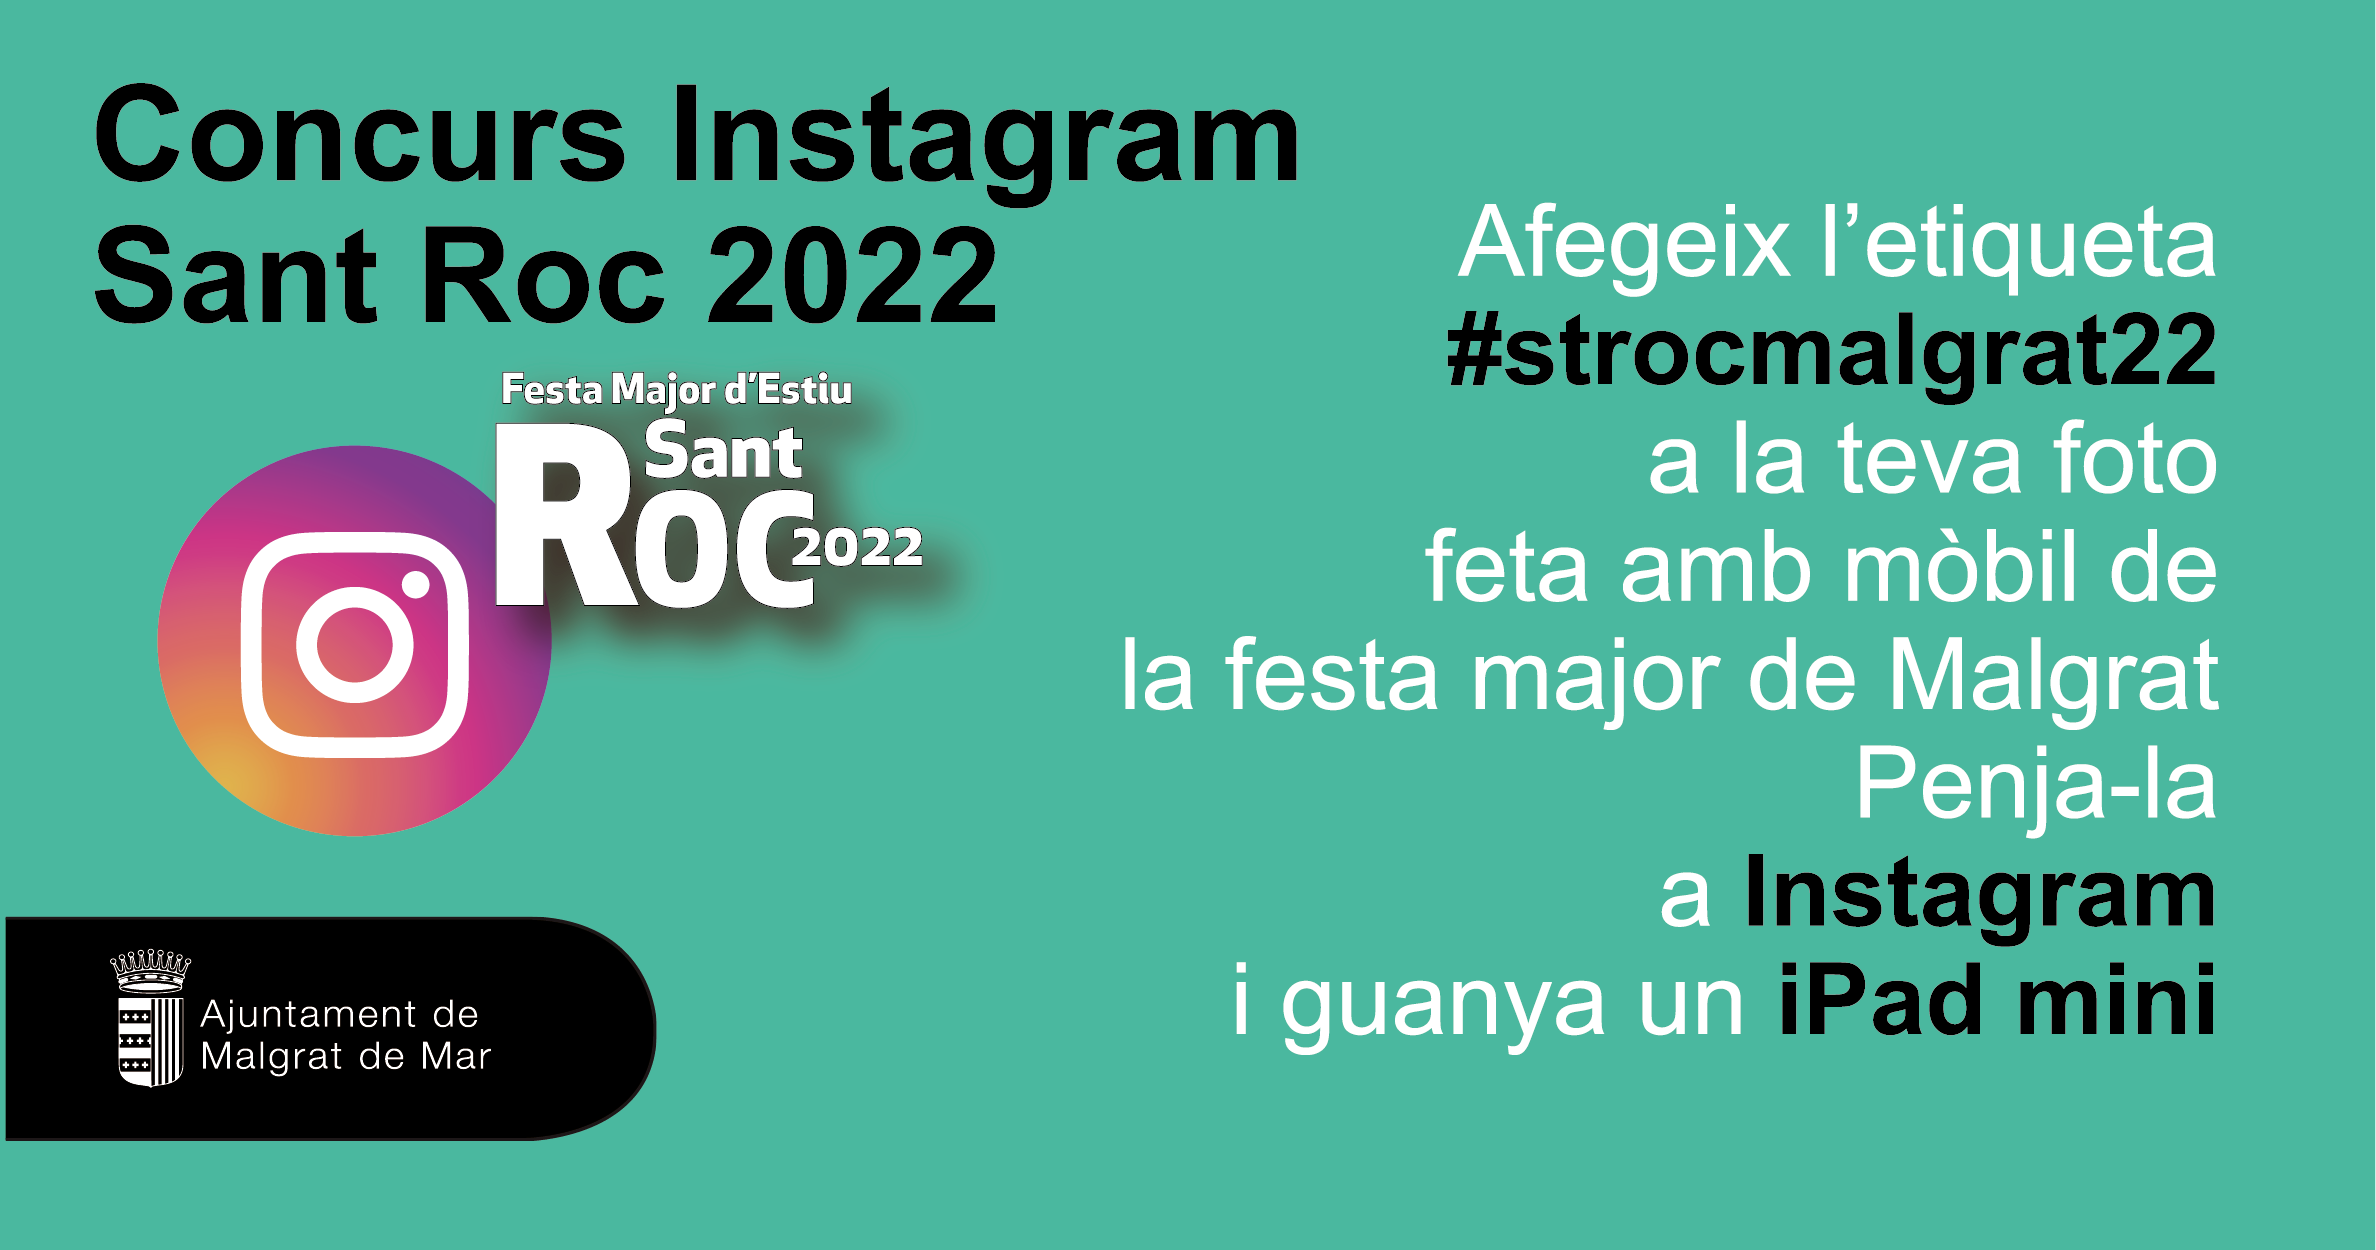 Torna el concurs de fotografies de Sant Roc a Instagram, que arriba a la setena edició